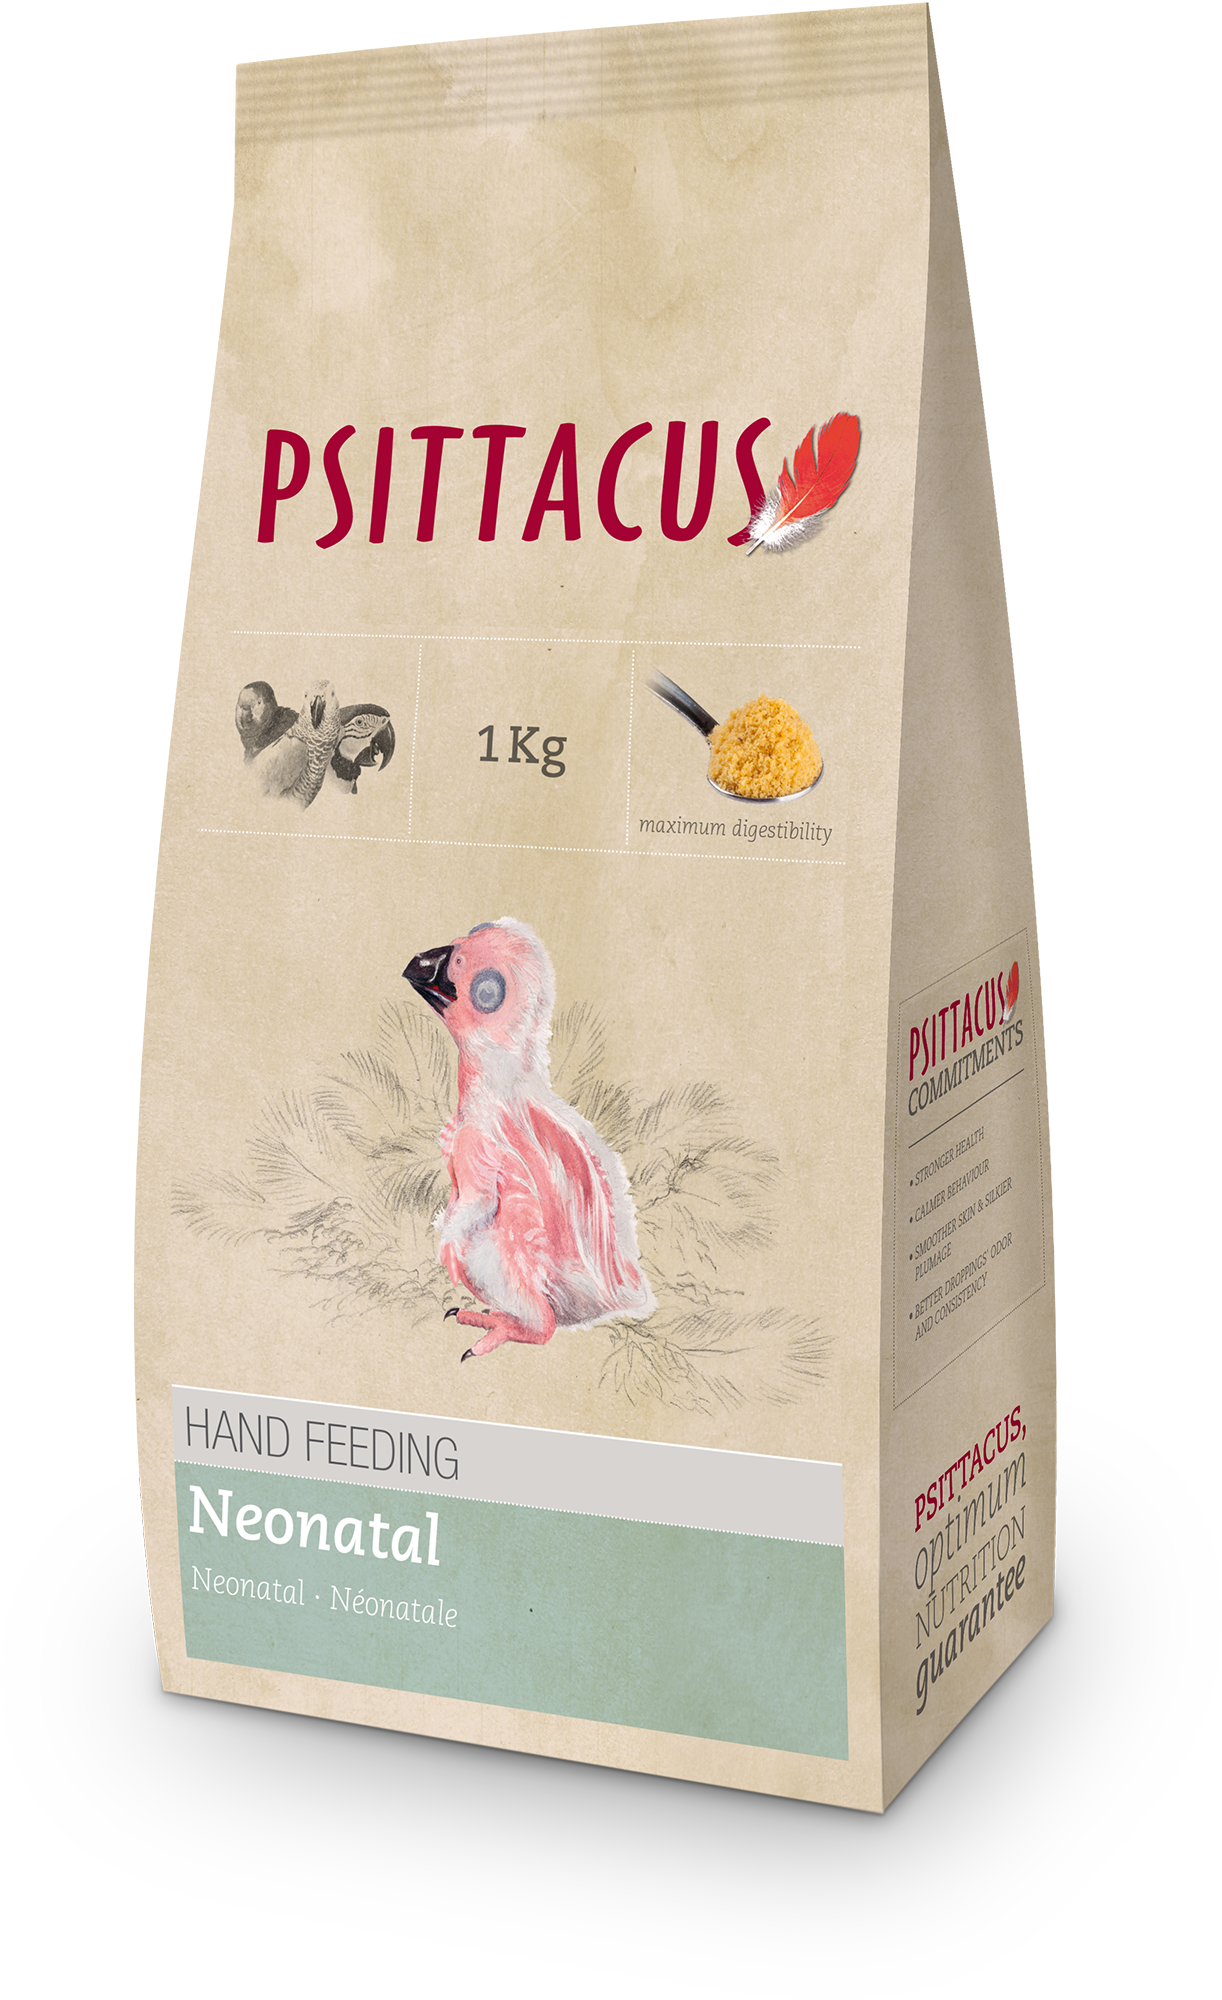 Psittacus Neonatal Hand Feeding 1kg